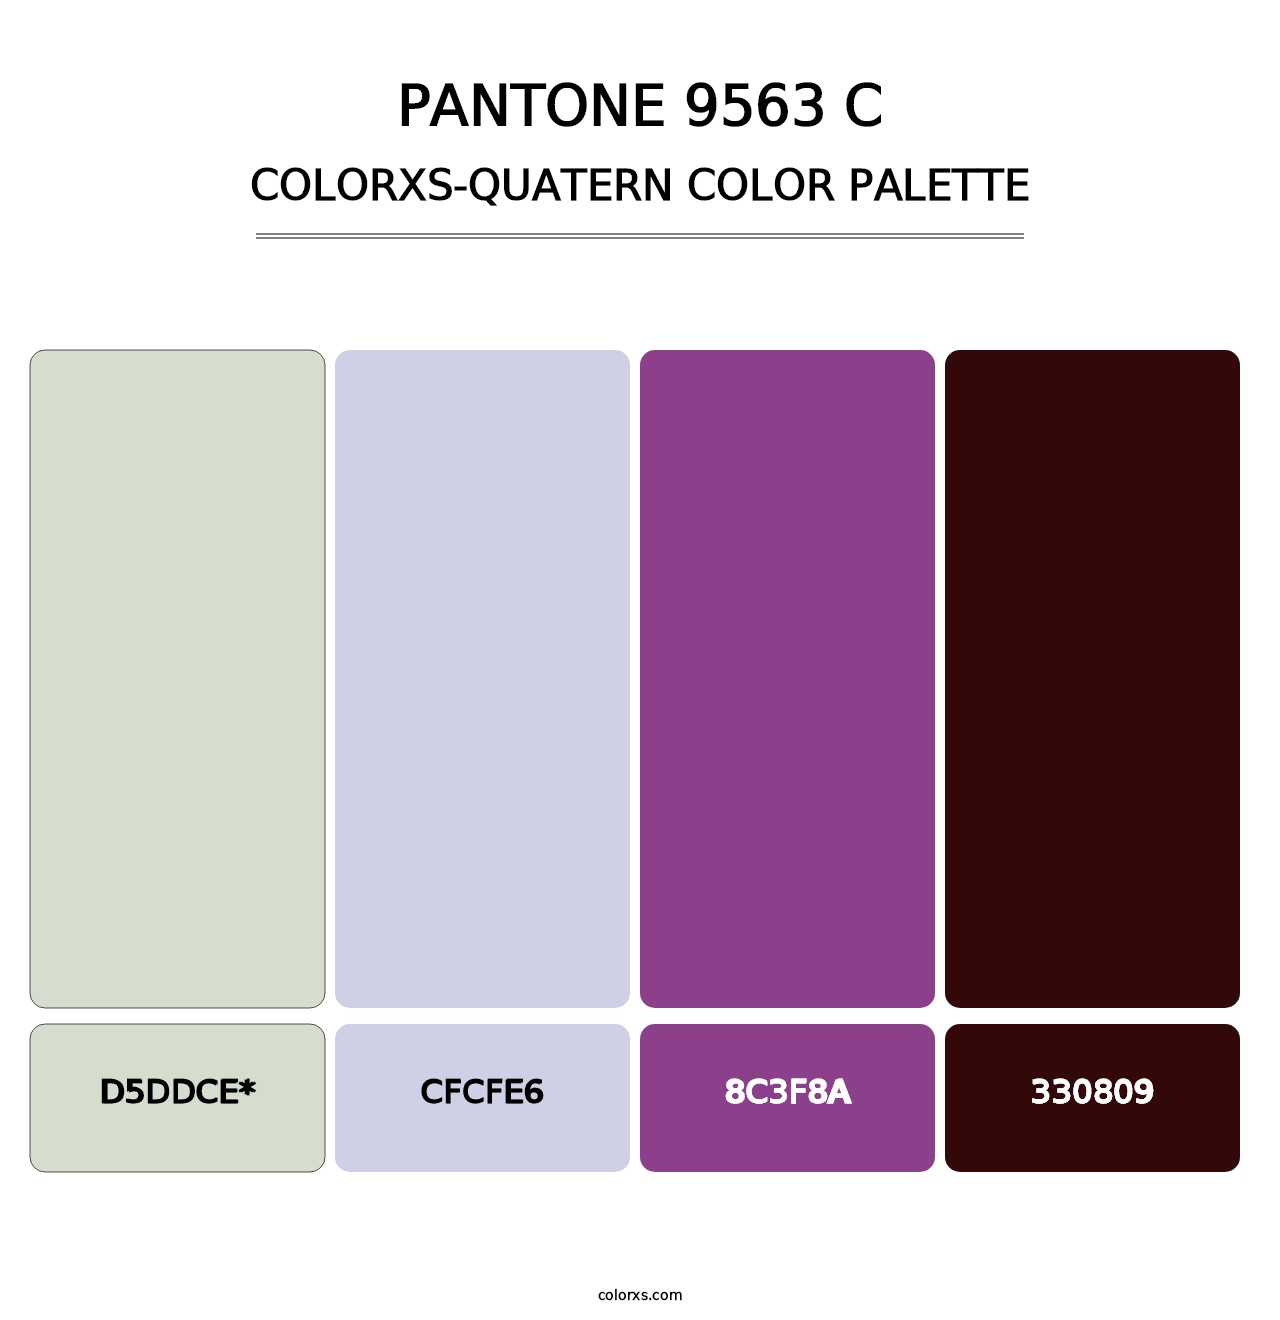 PANTONE 9563 C - Colorxs Quatern Palette